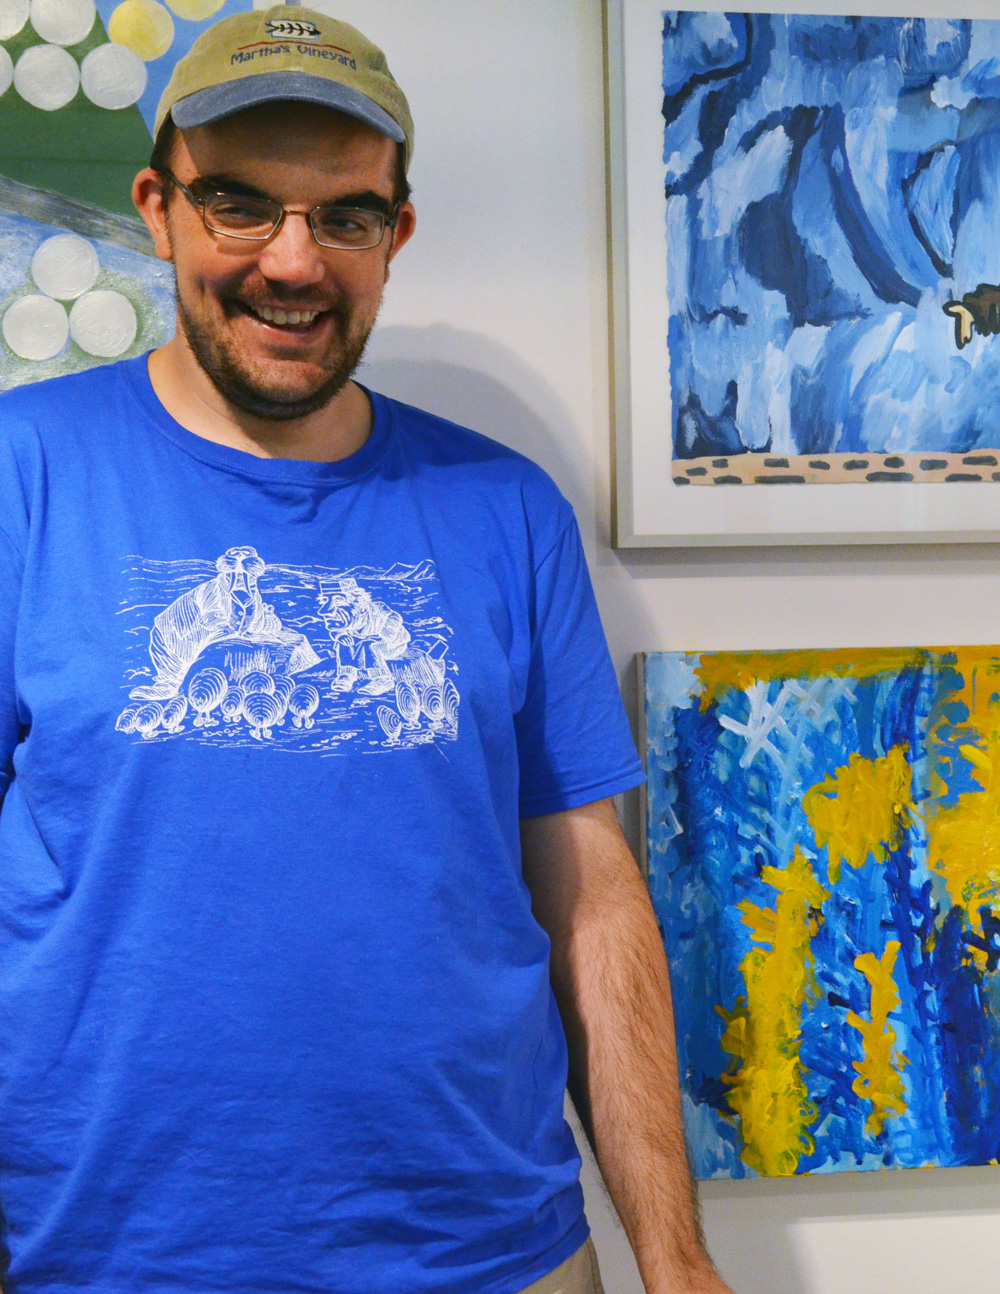 Jon Herzog with his artwork